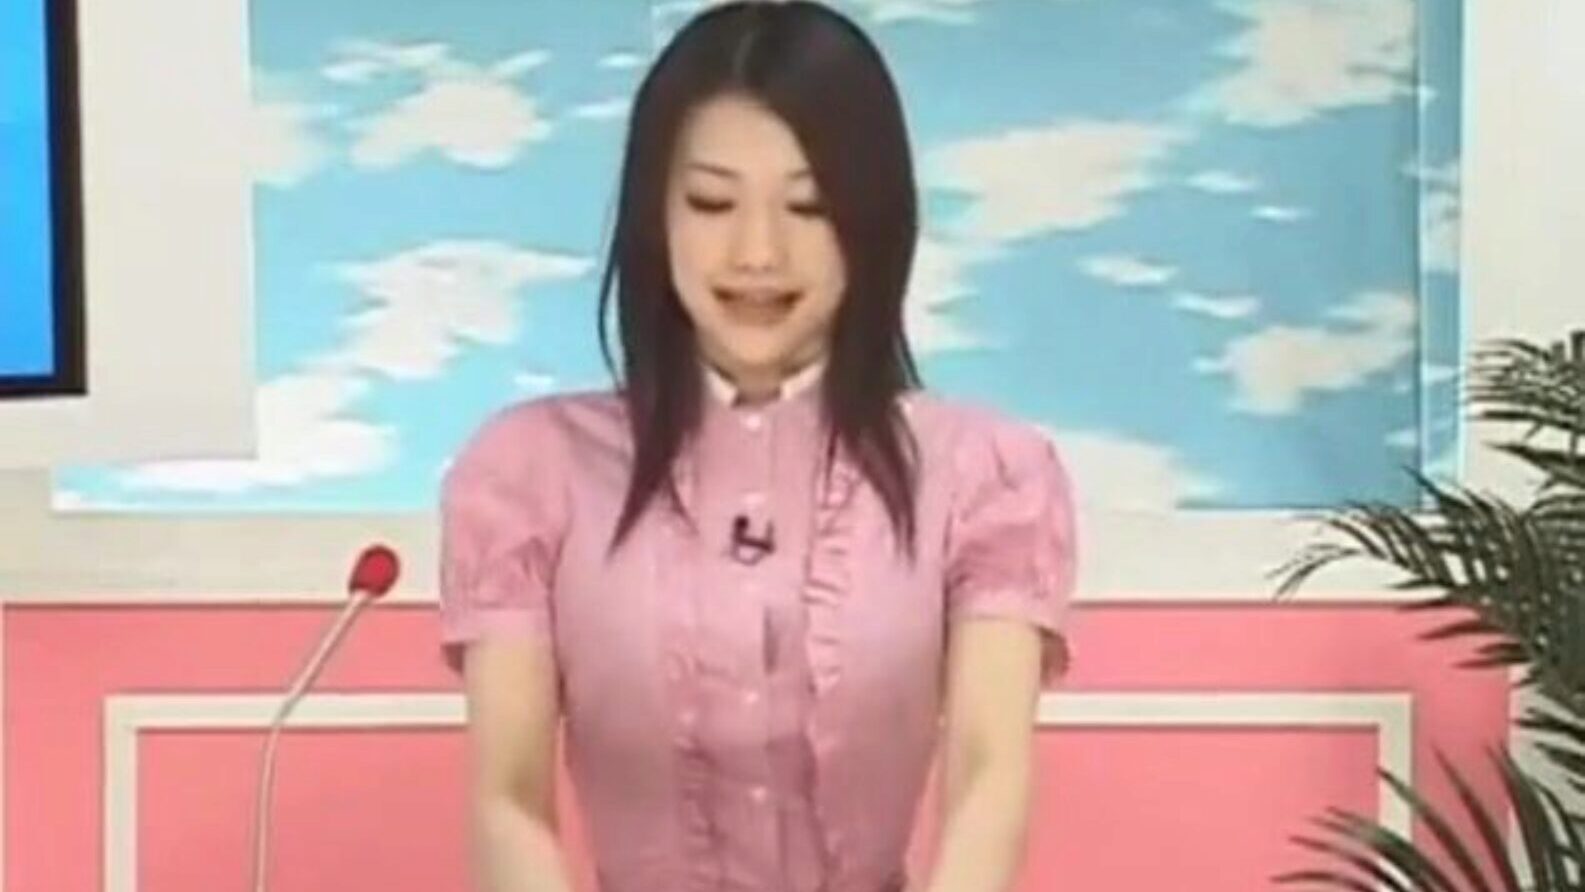 reporter giapponese pompato mentre questa ragazza riporta la notizia